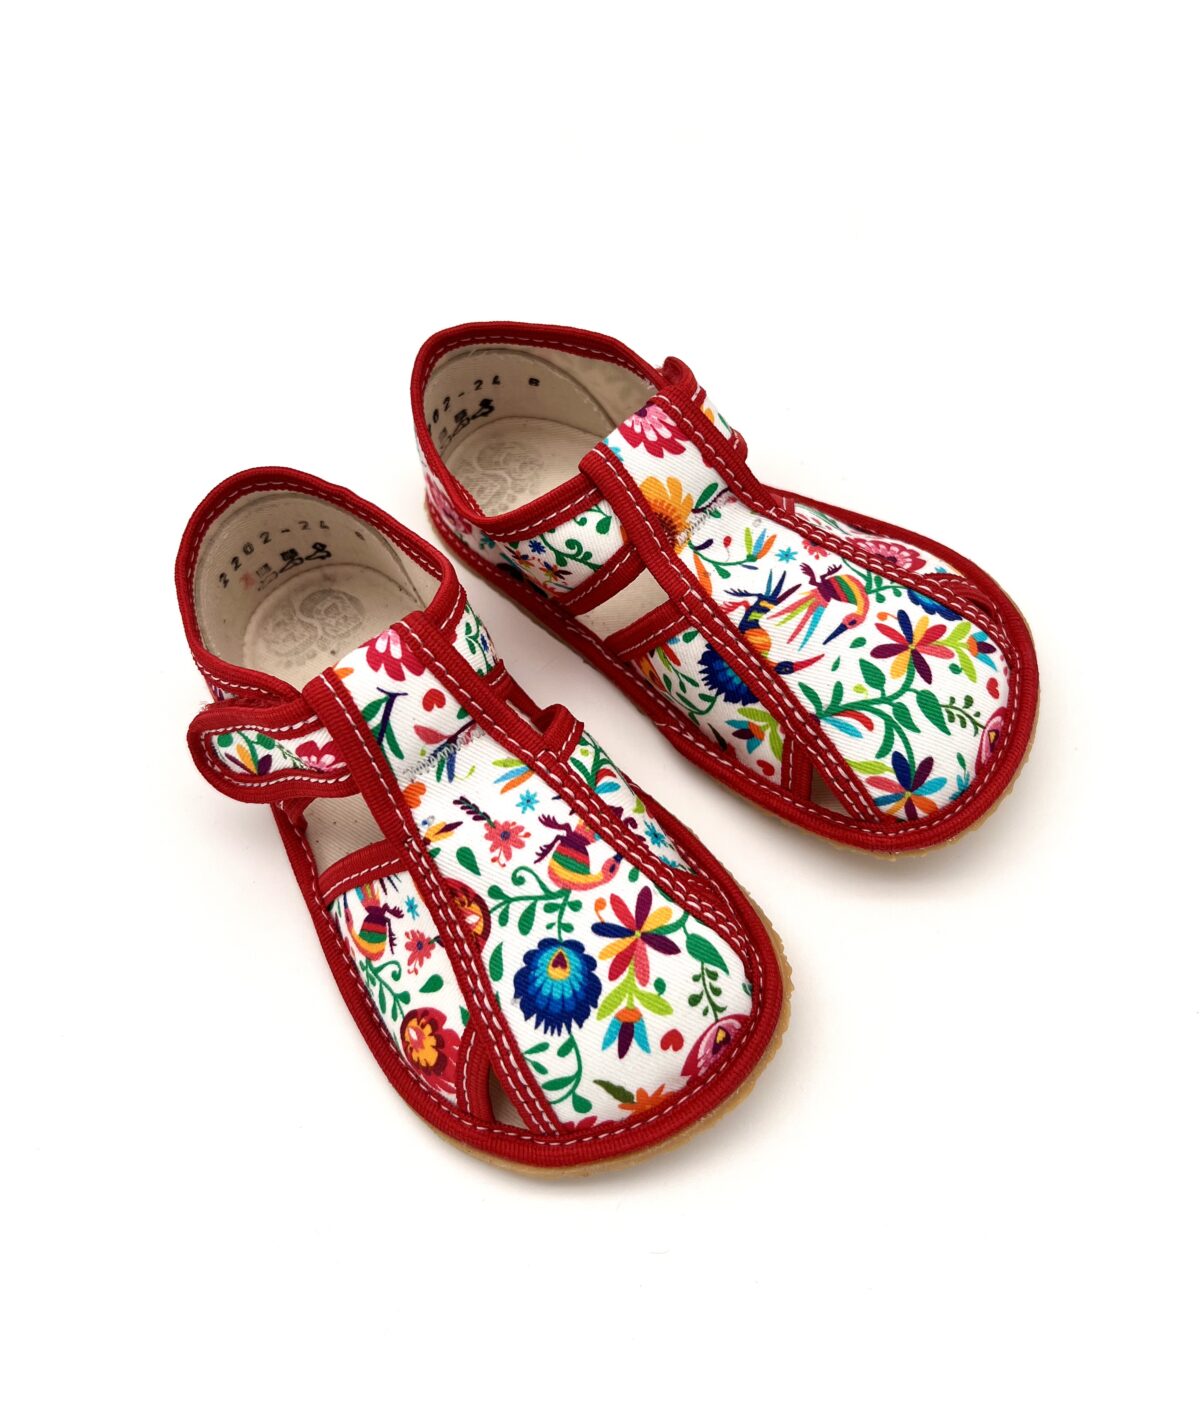 Baby Bare sisejalatsid White Folklore Laste barefoot jalatsid - HellyK - Kvaliteetsed lasteriided, villariided, barefoot jalatsid